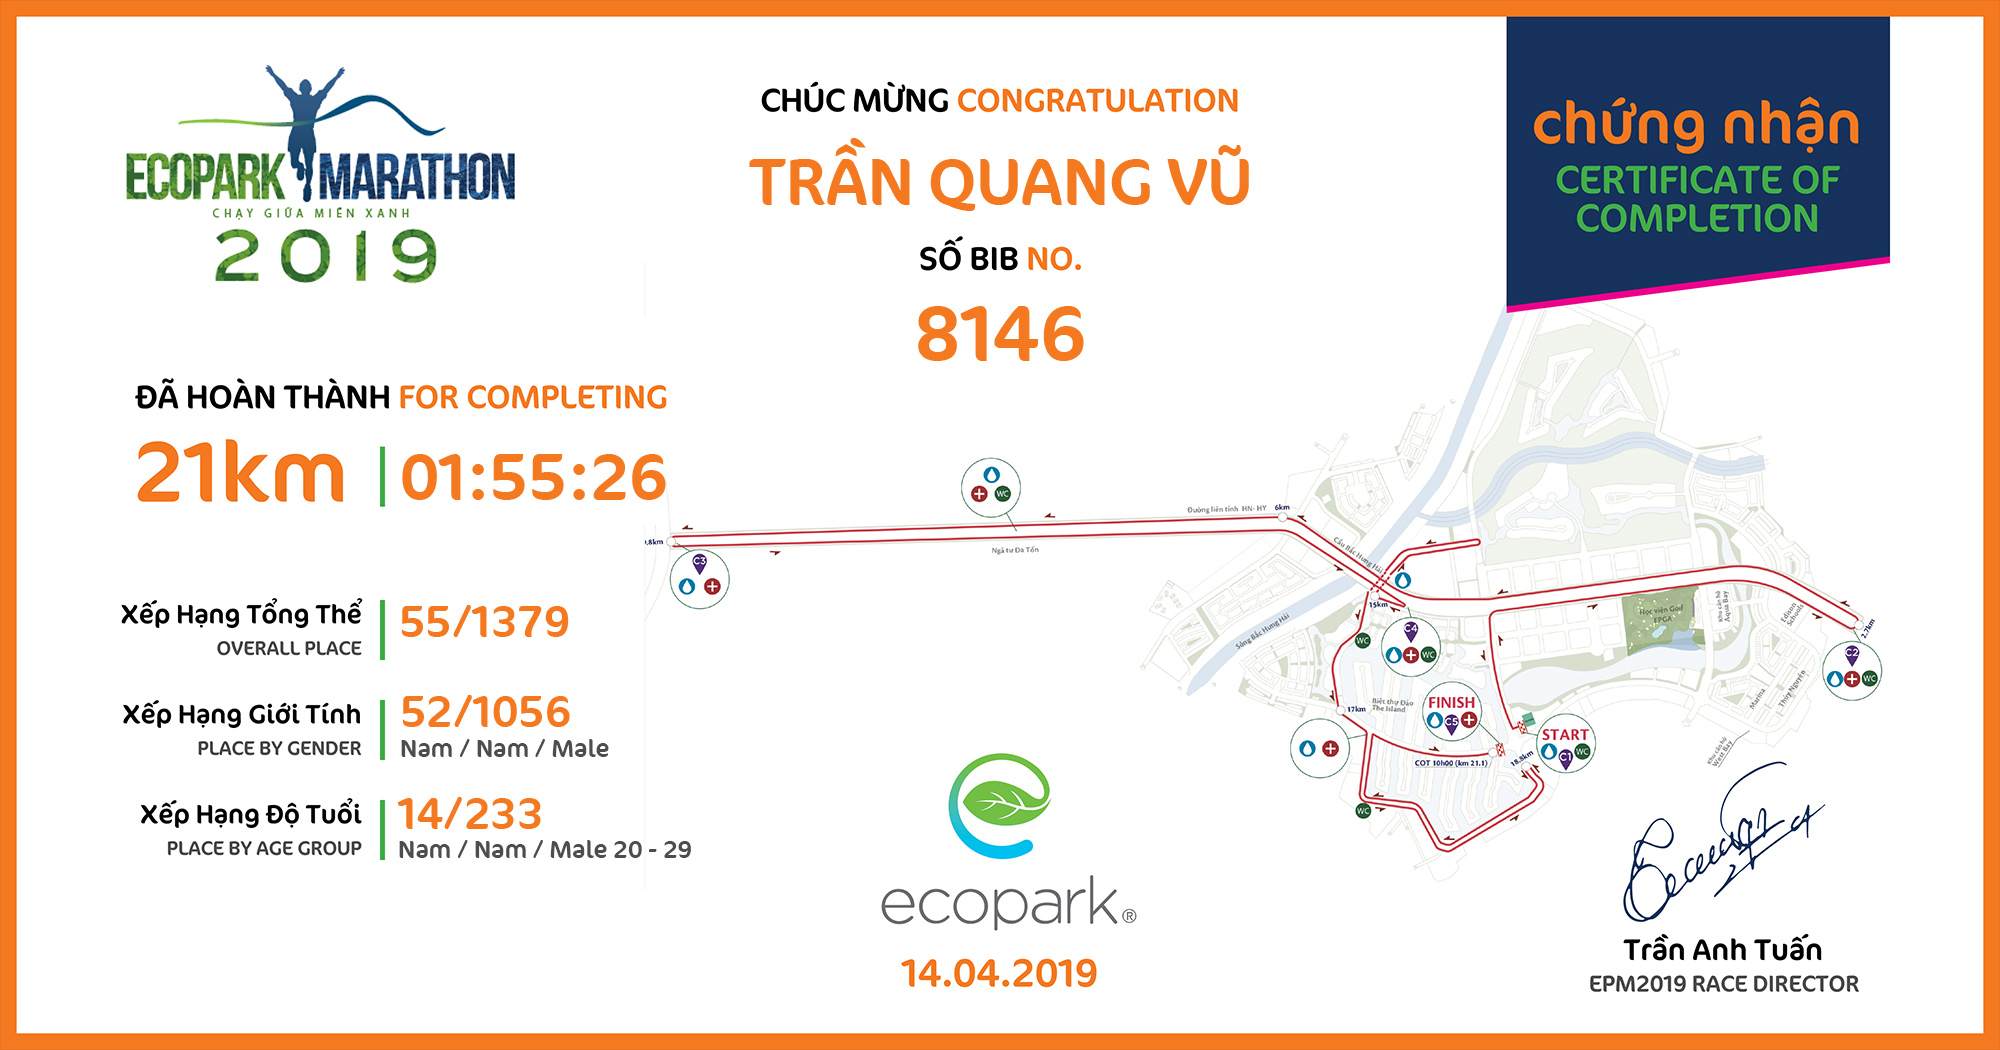 8146 - Trần Quang Vũ